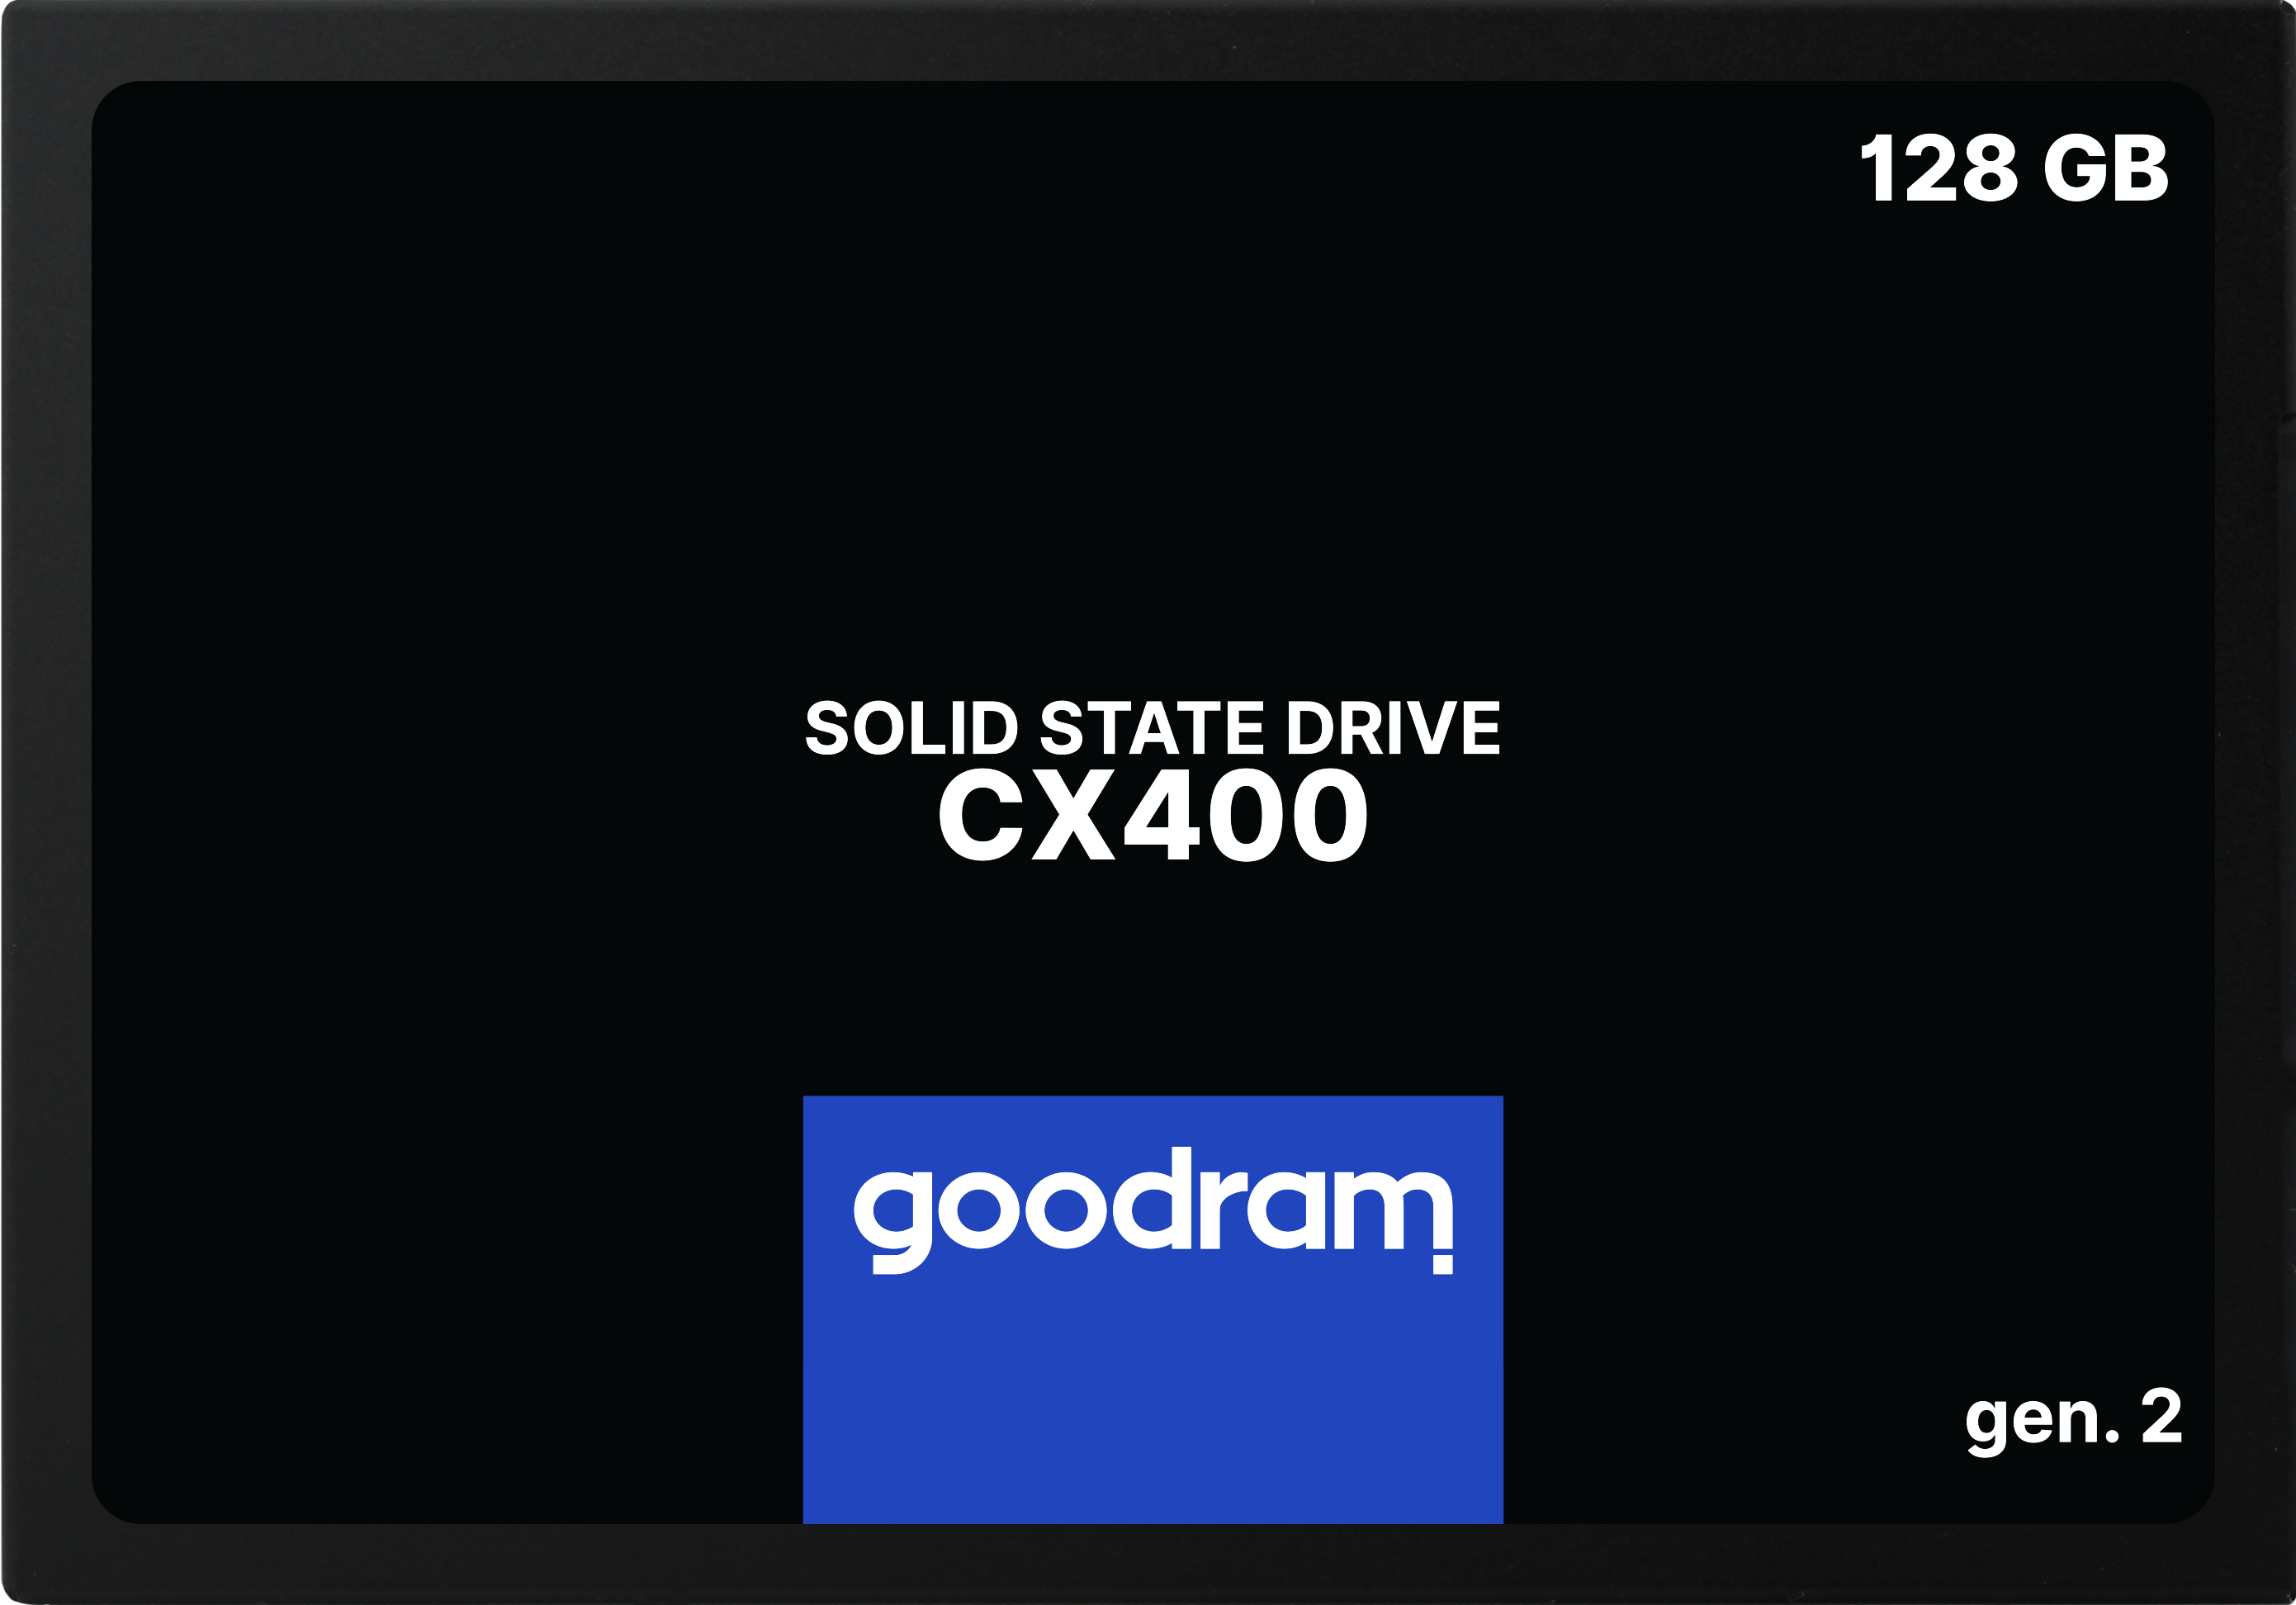 Goodram CX400 gen.2